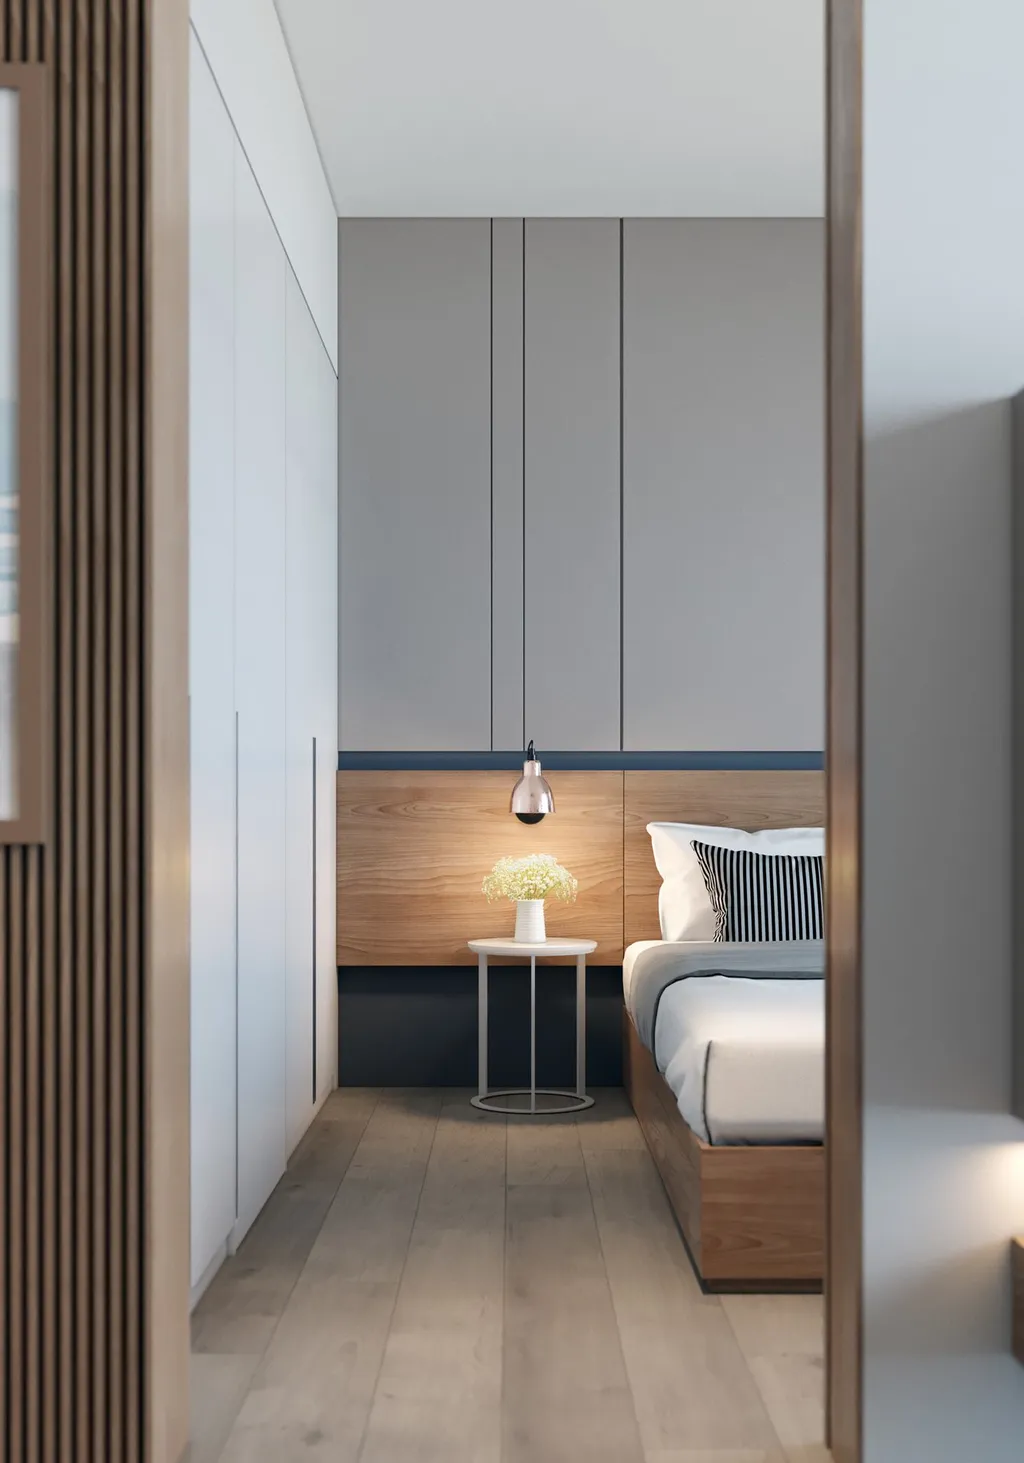 Công trình hoàn thiện nội thất cho phòng ngủ căn hộ theo phong cách Minimalism